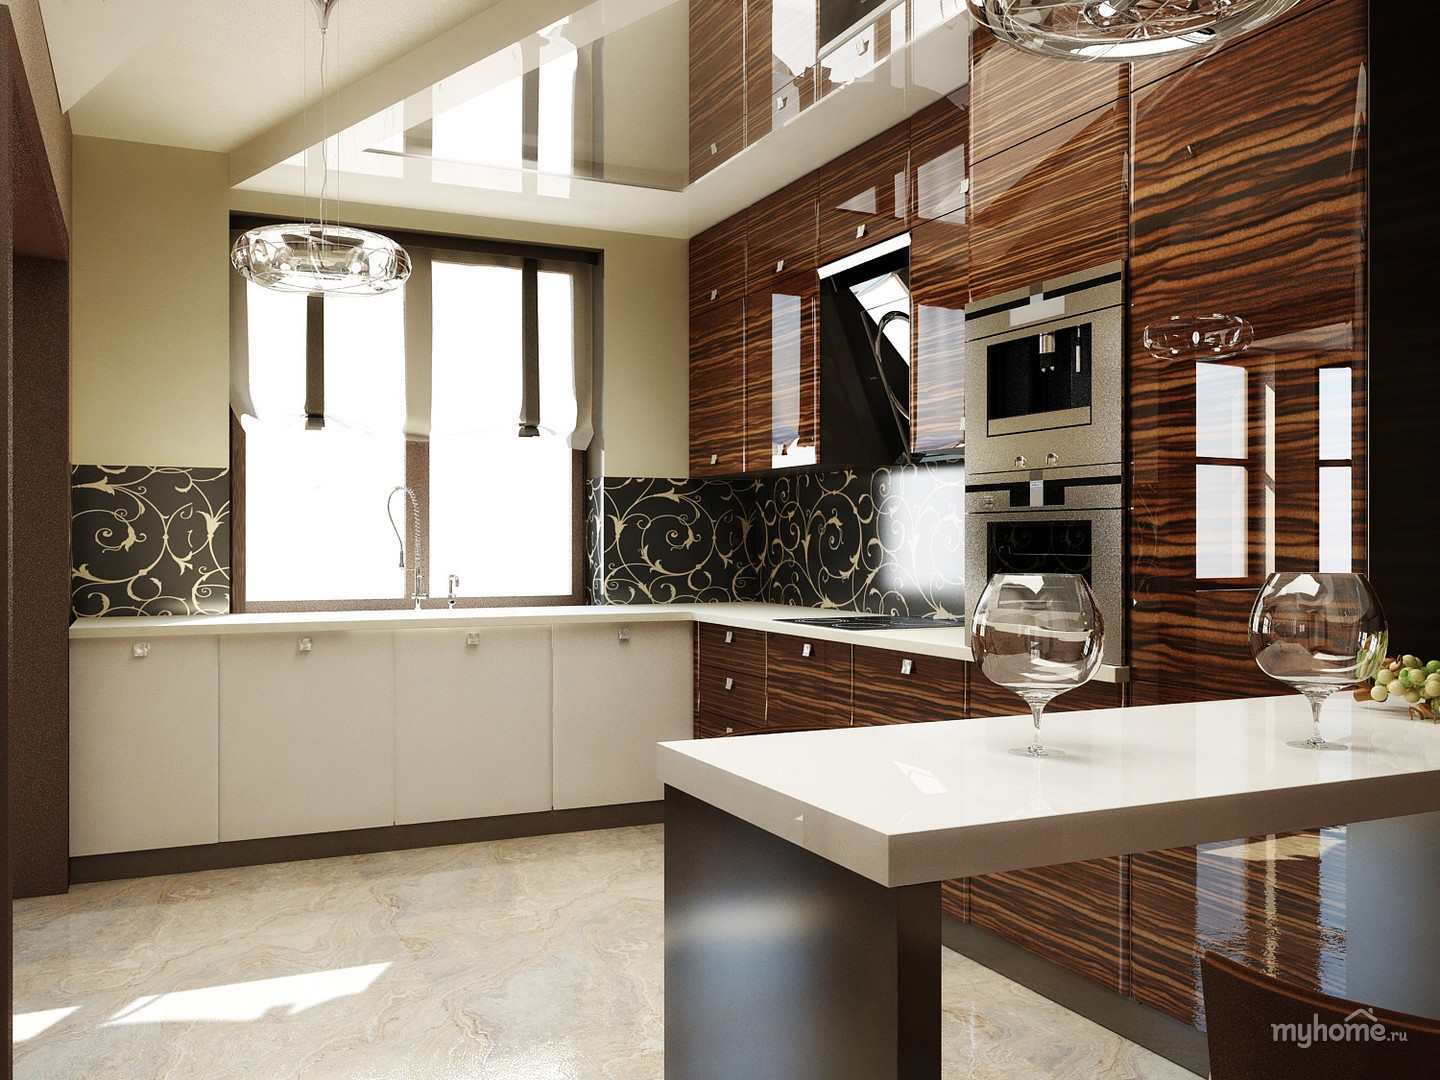 Кухня с окном дизайн интерьер фото в доме